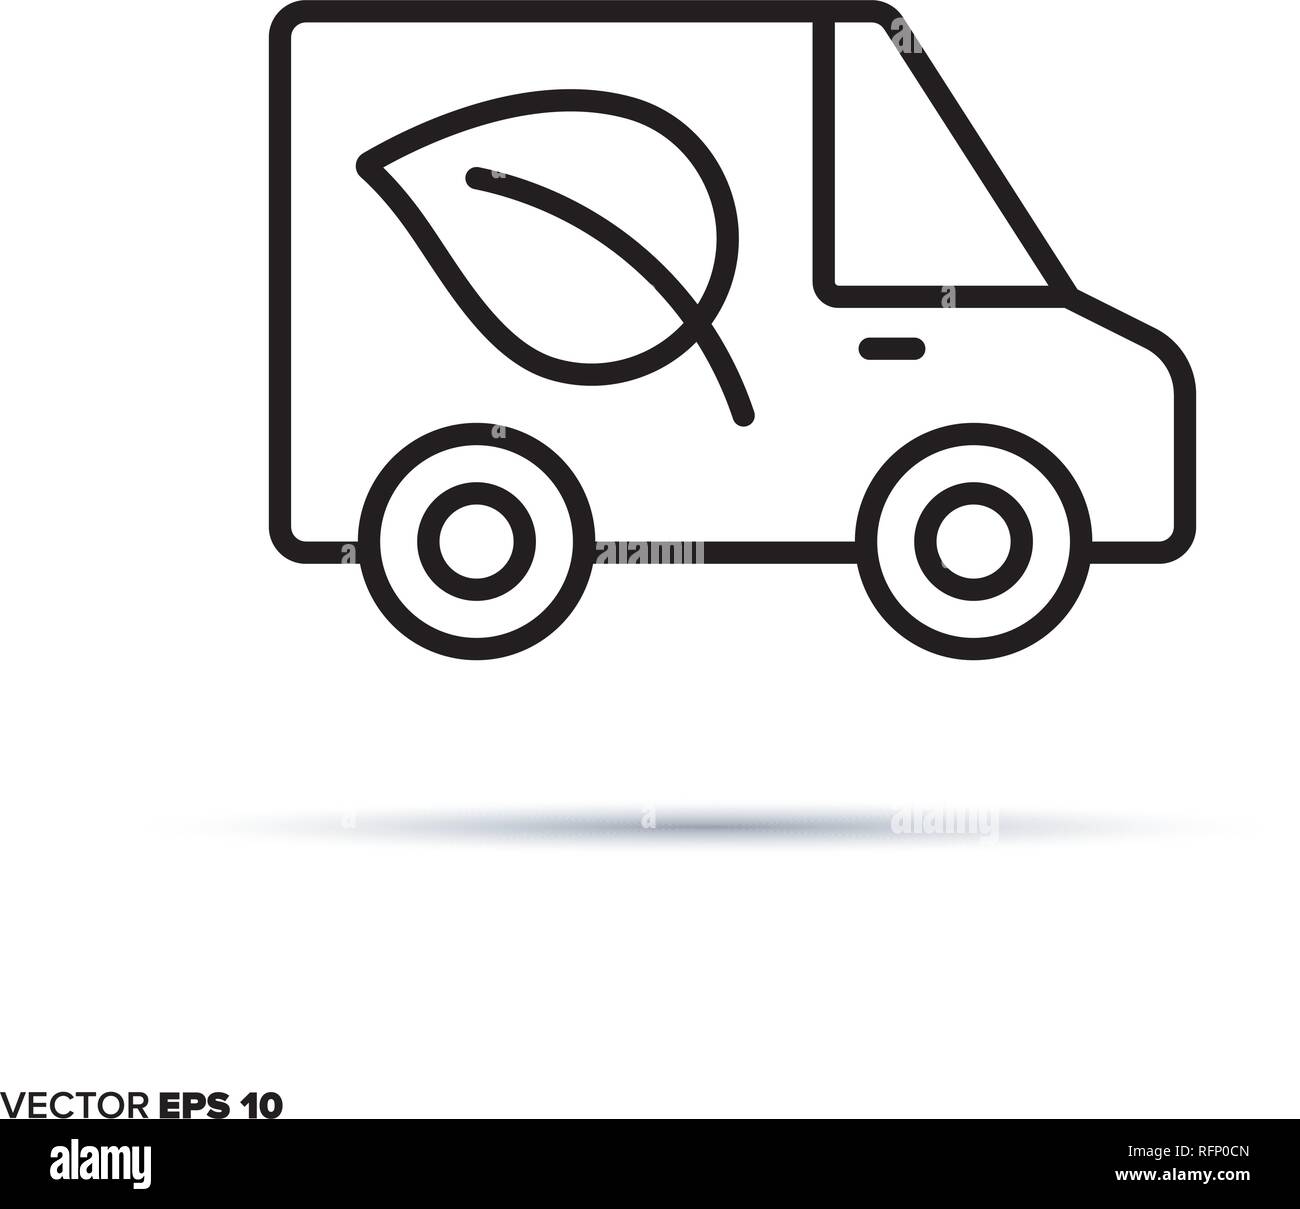 Camion de livraison avec l'icône de la ligne du vecteur. Symbole de transport écologique et durable. Illustration de Vecteur